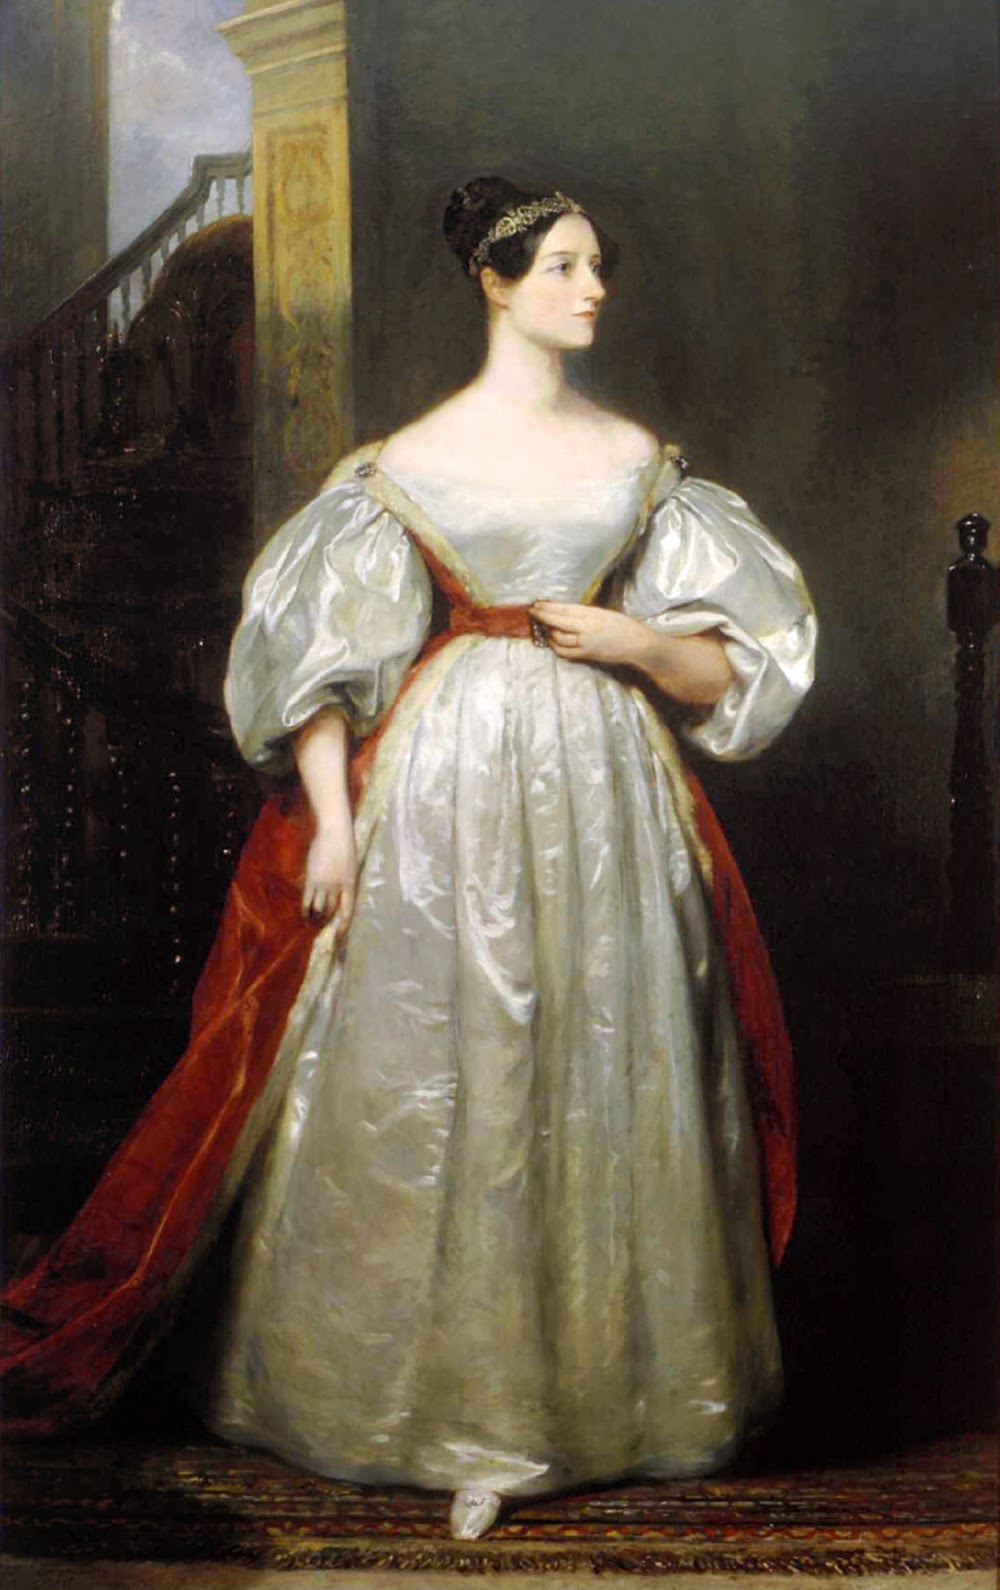 http://en.wikipedia.org/wiki/Ada_Lovelace